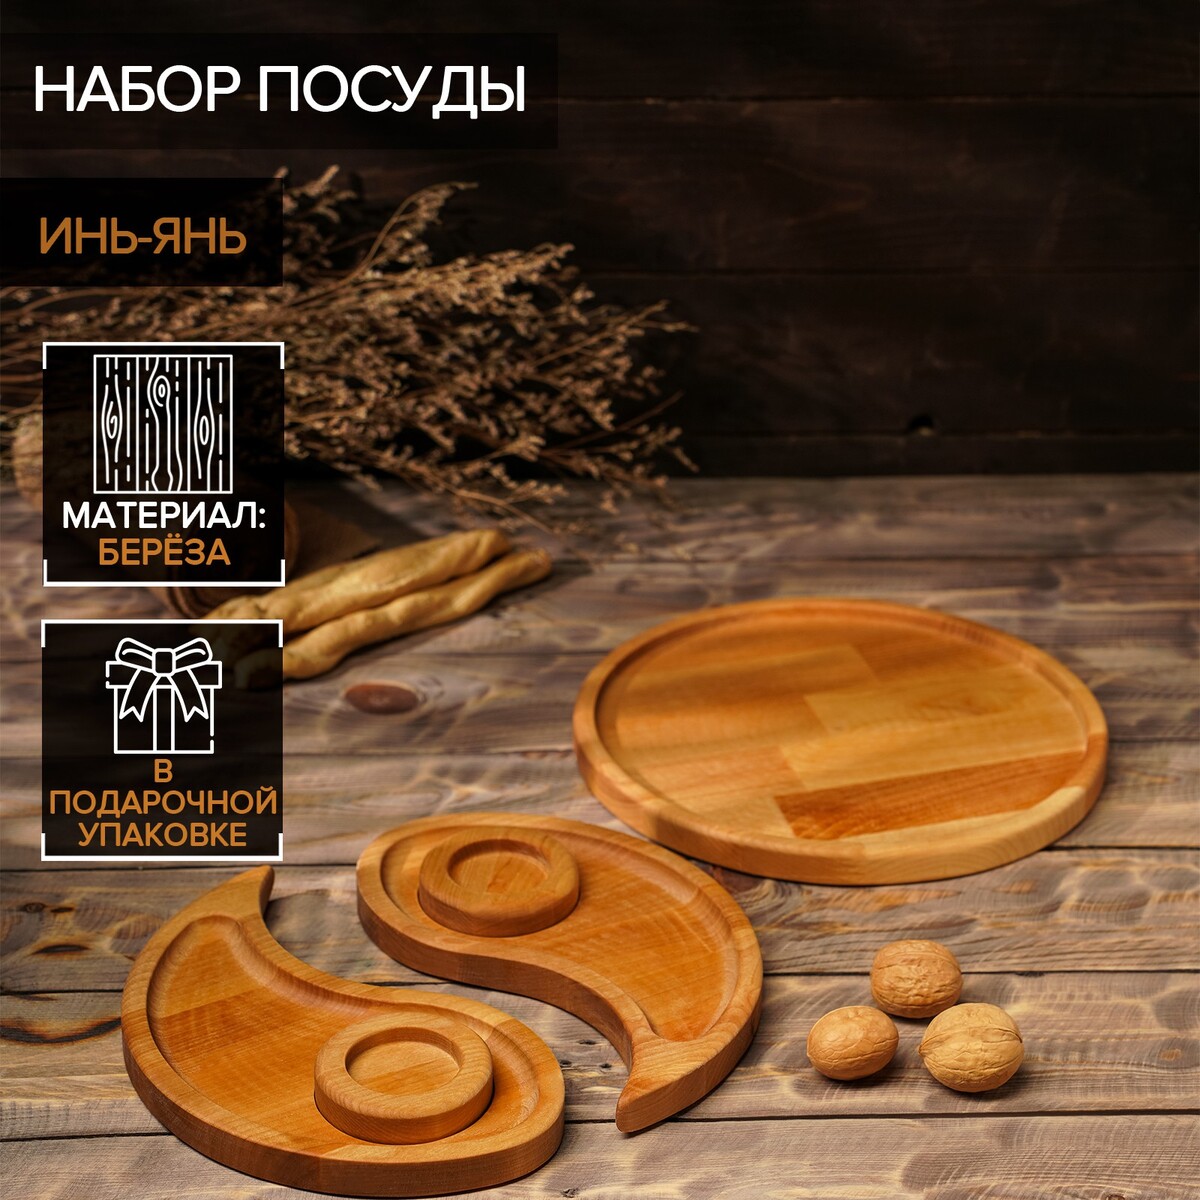 Подарочный набор деревянной посуды adelica большой набор mykafort б 50 эл деревянной железной дороги